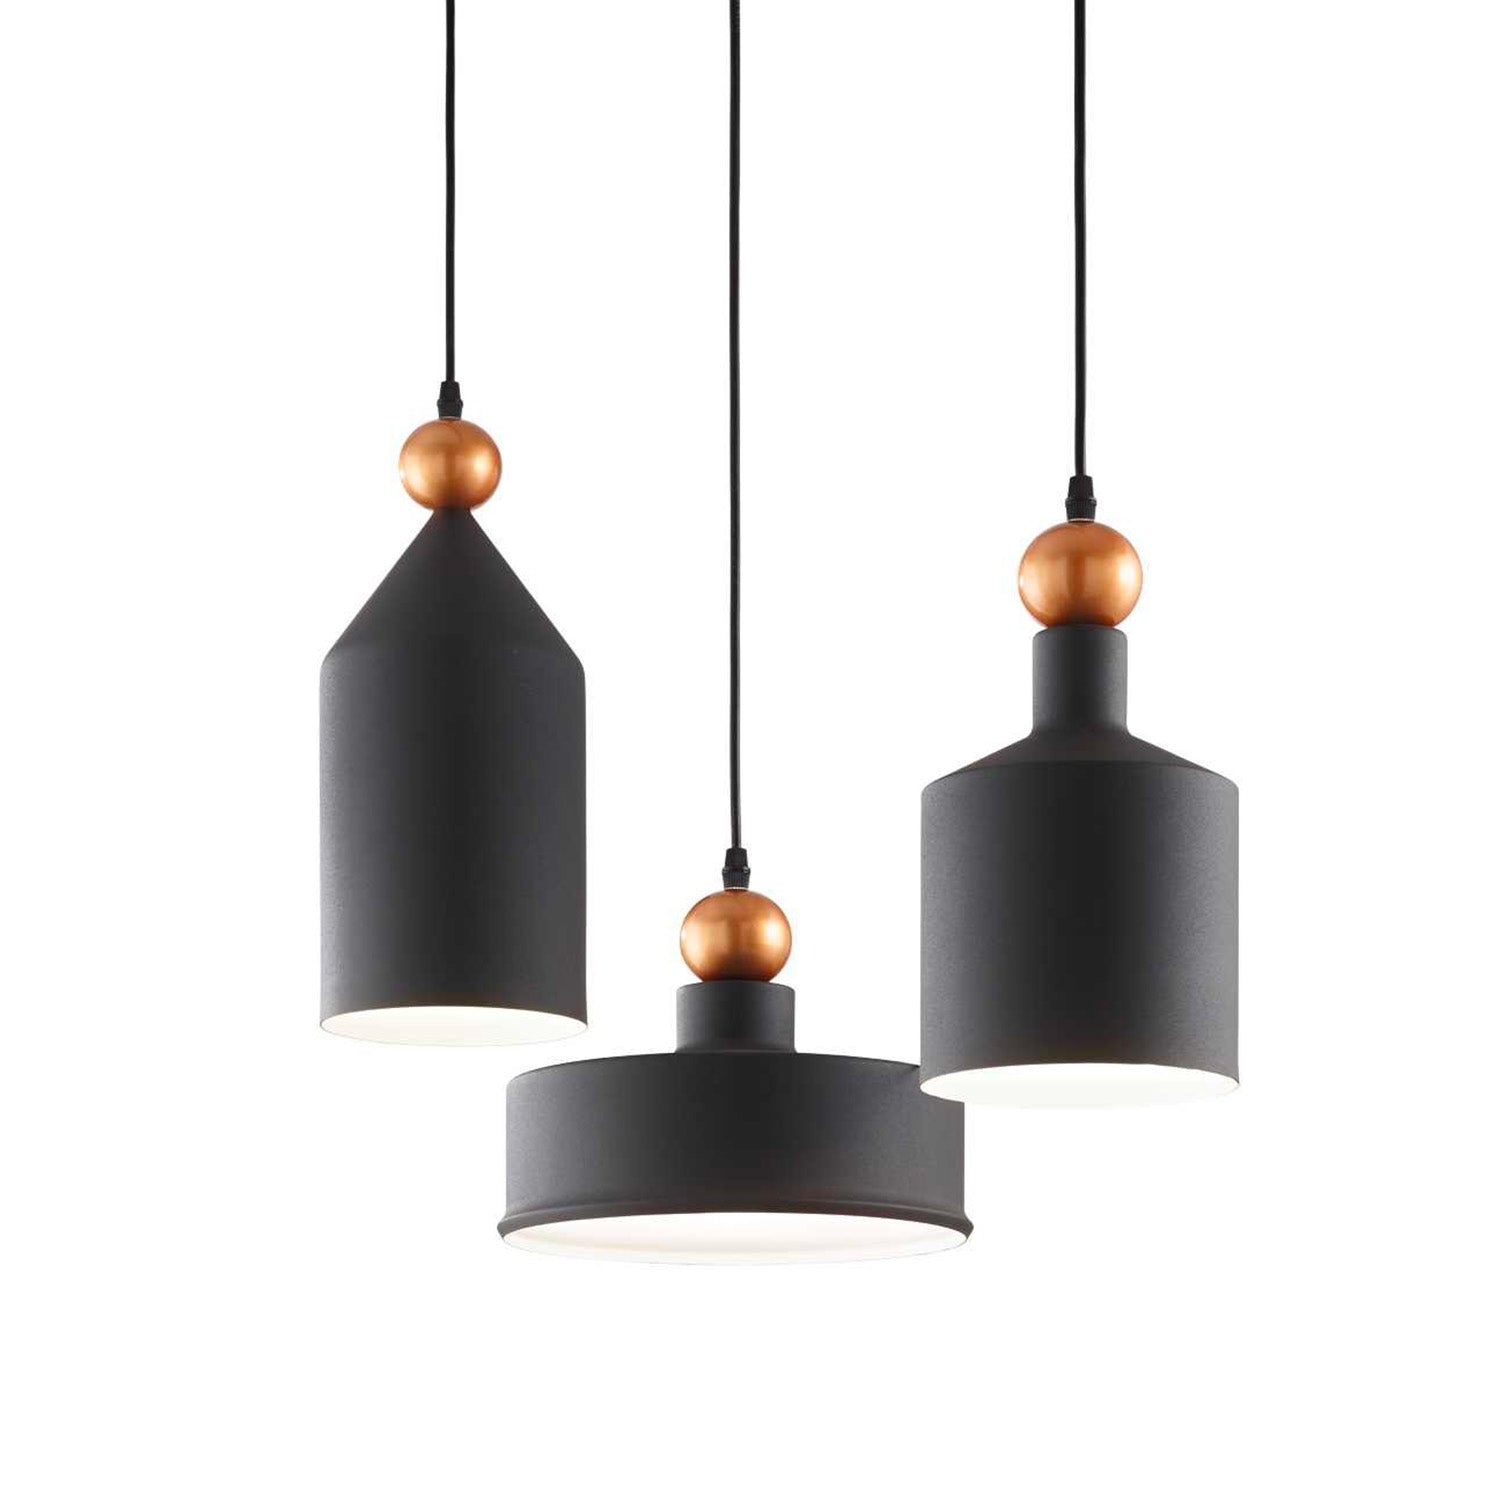 TRIADE - 3-light chandelier in industrial black steel